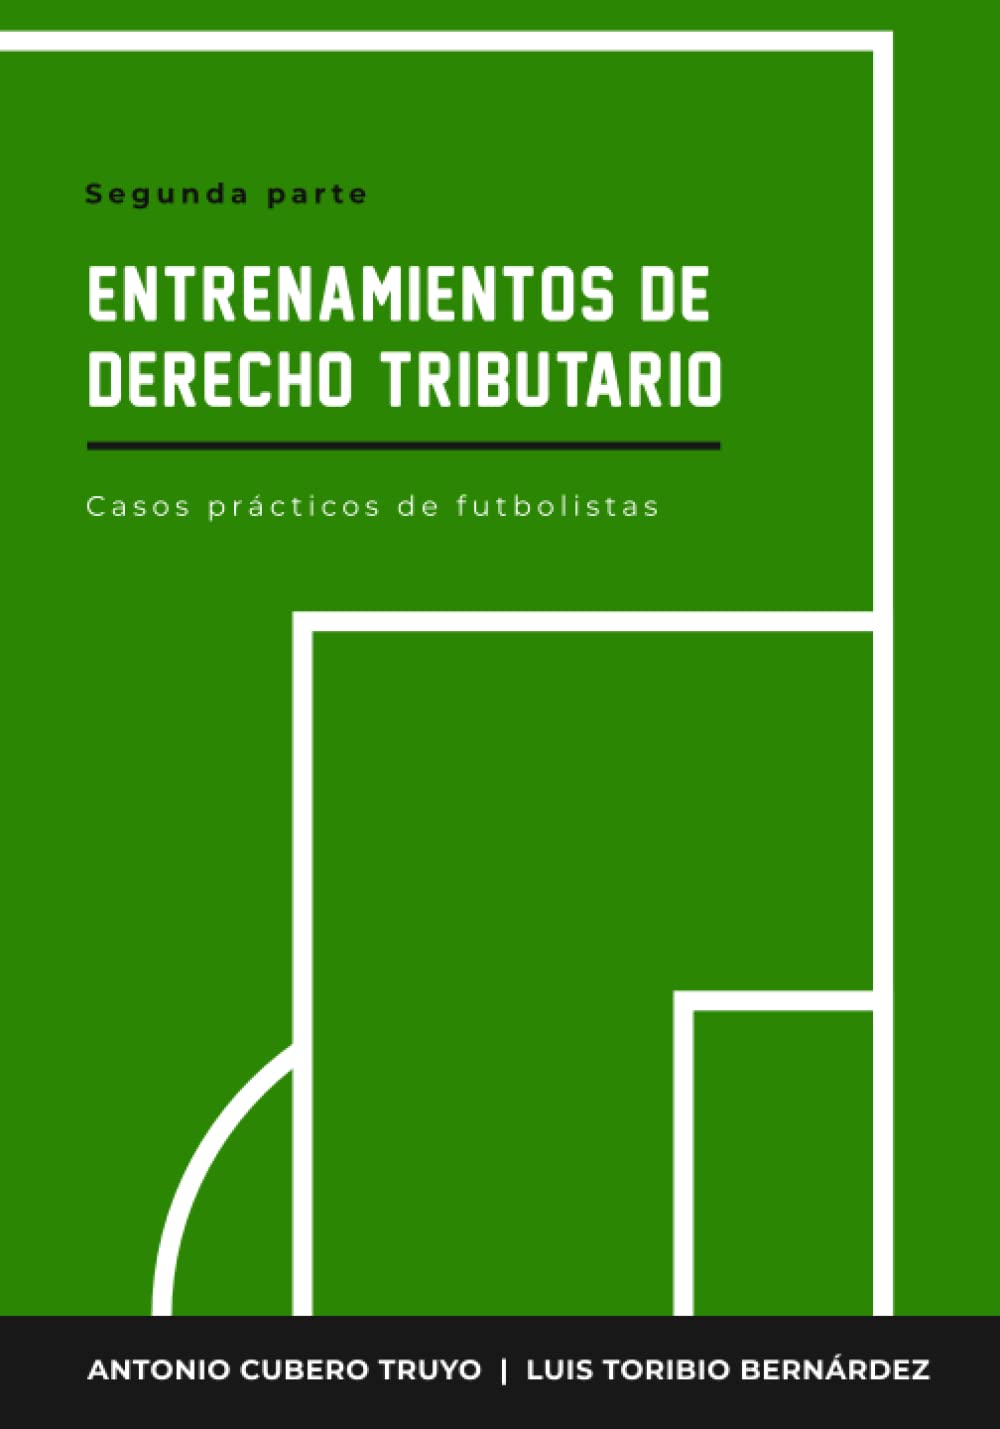 Imagen de portada del libro Entrenamientos de derecho tributario (casos prácticos de futbolistas)